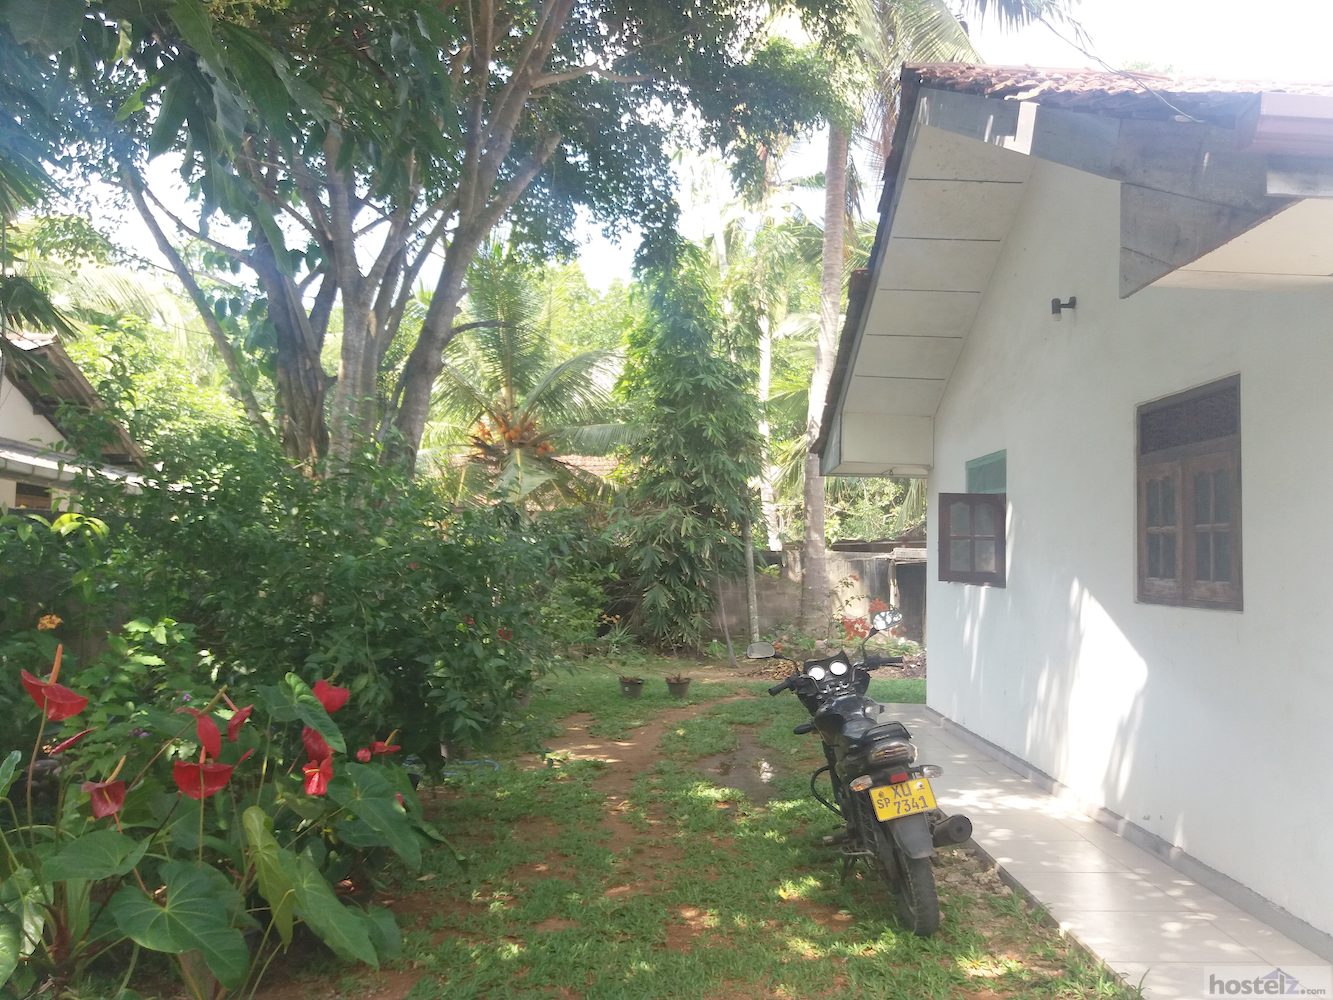 Ceylon Hostel Galle, Unawatuna